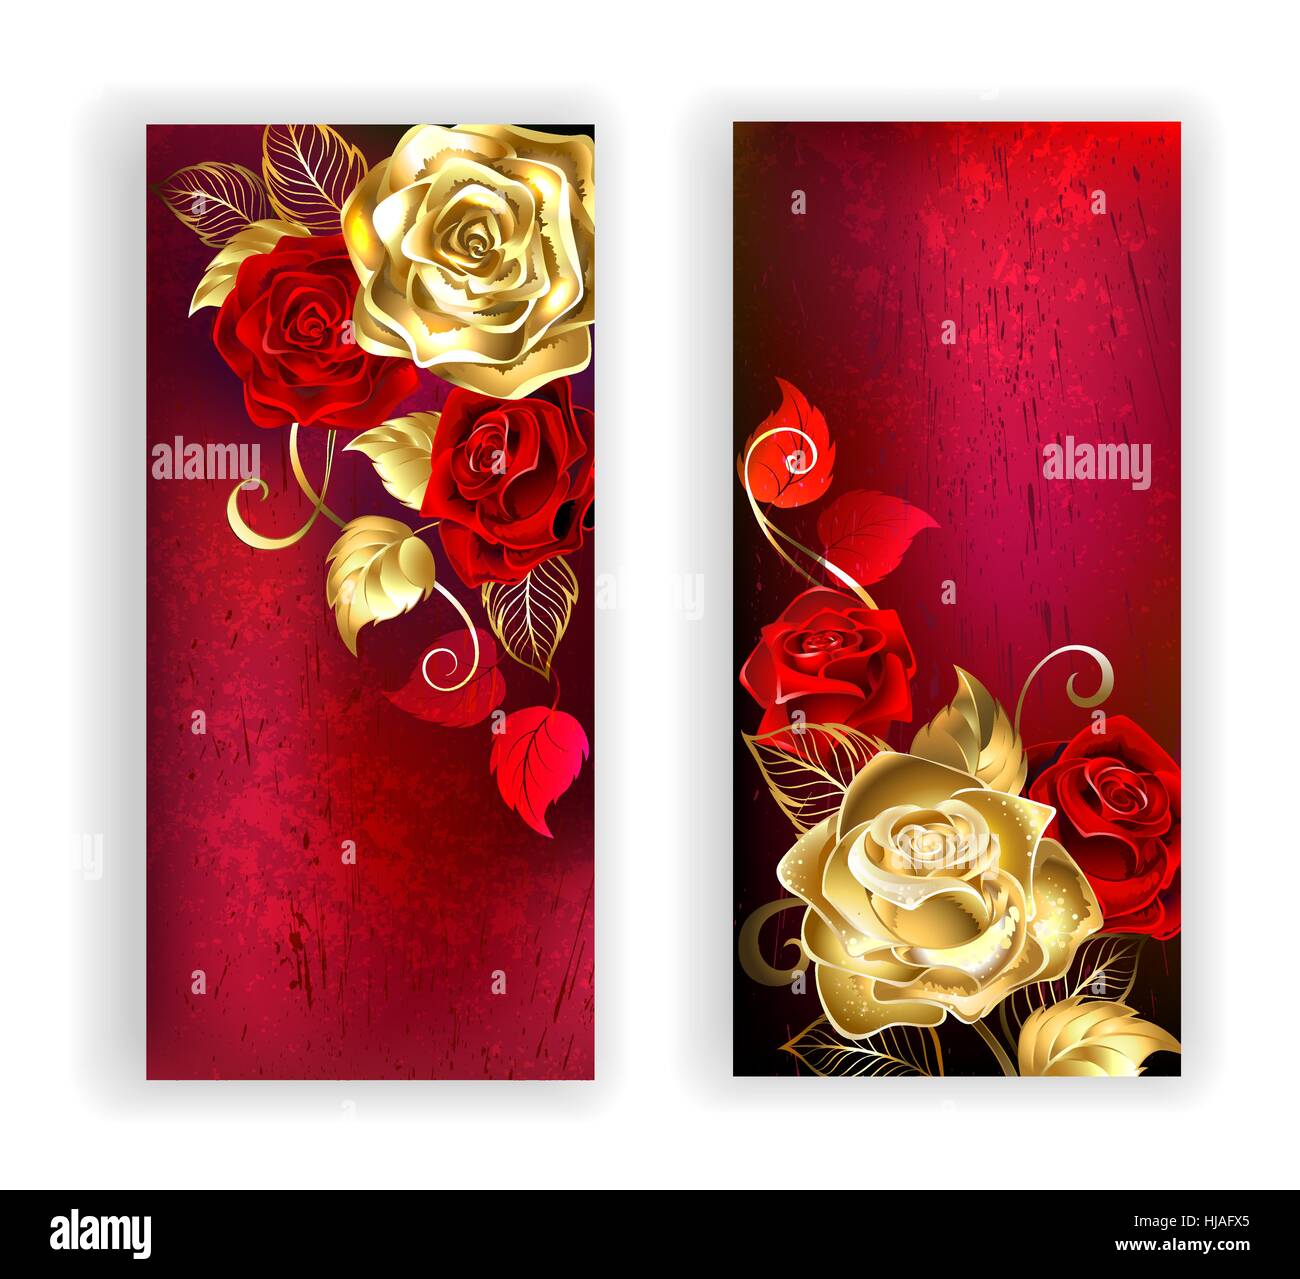 zwei Banner mit gold und rote Rosen auf rotem Hintergrund Textur. Design mit Rosen. Goldene Rose. Stock Vektor